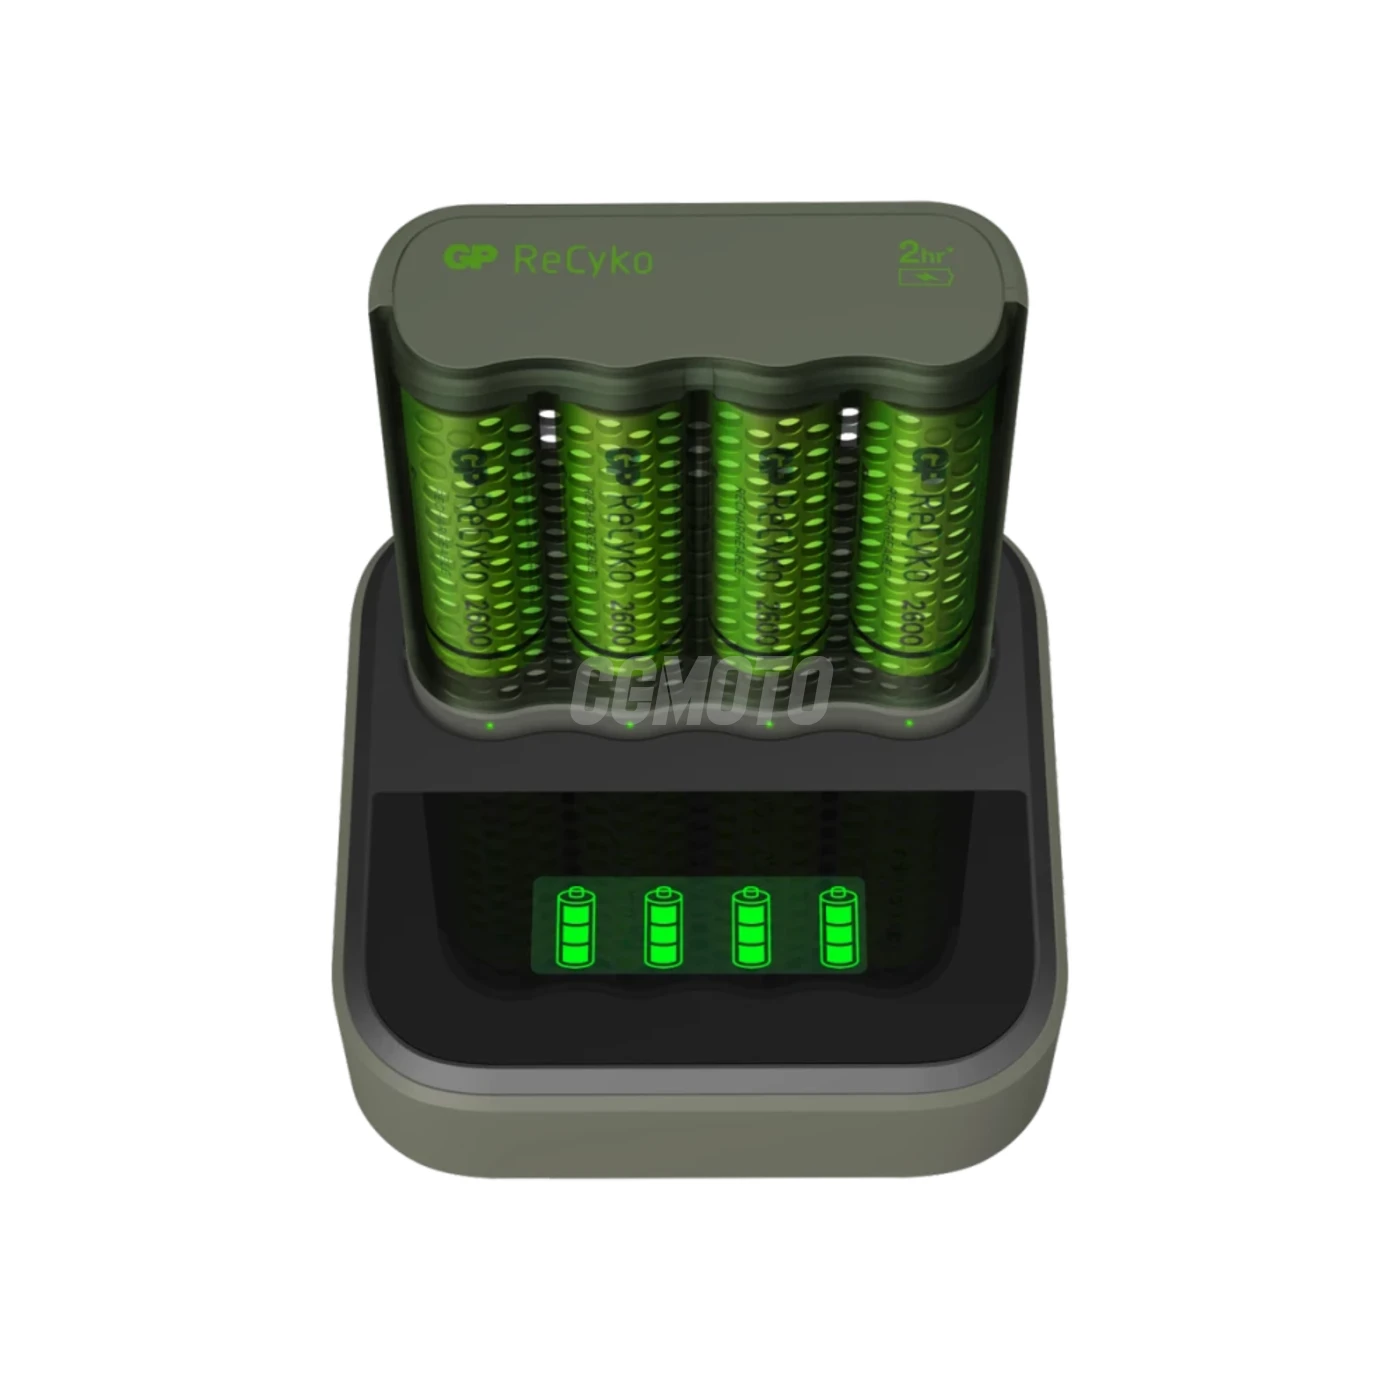 Caricatore rapido 2-4 ore M451 USB + 4 batterie AA 2600mAh + Dock D451